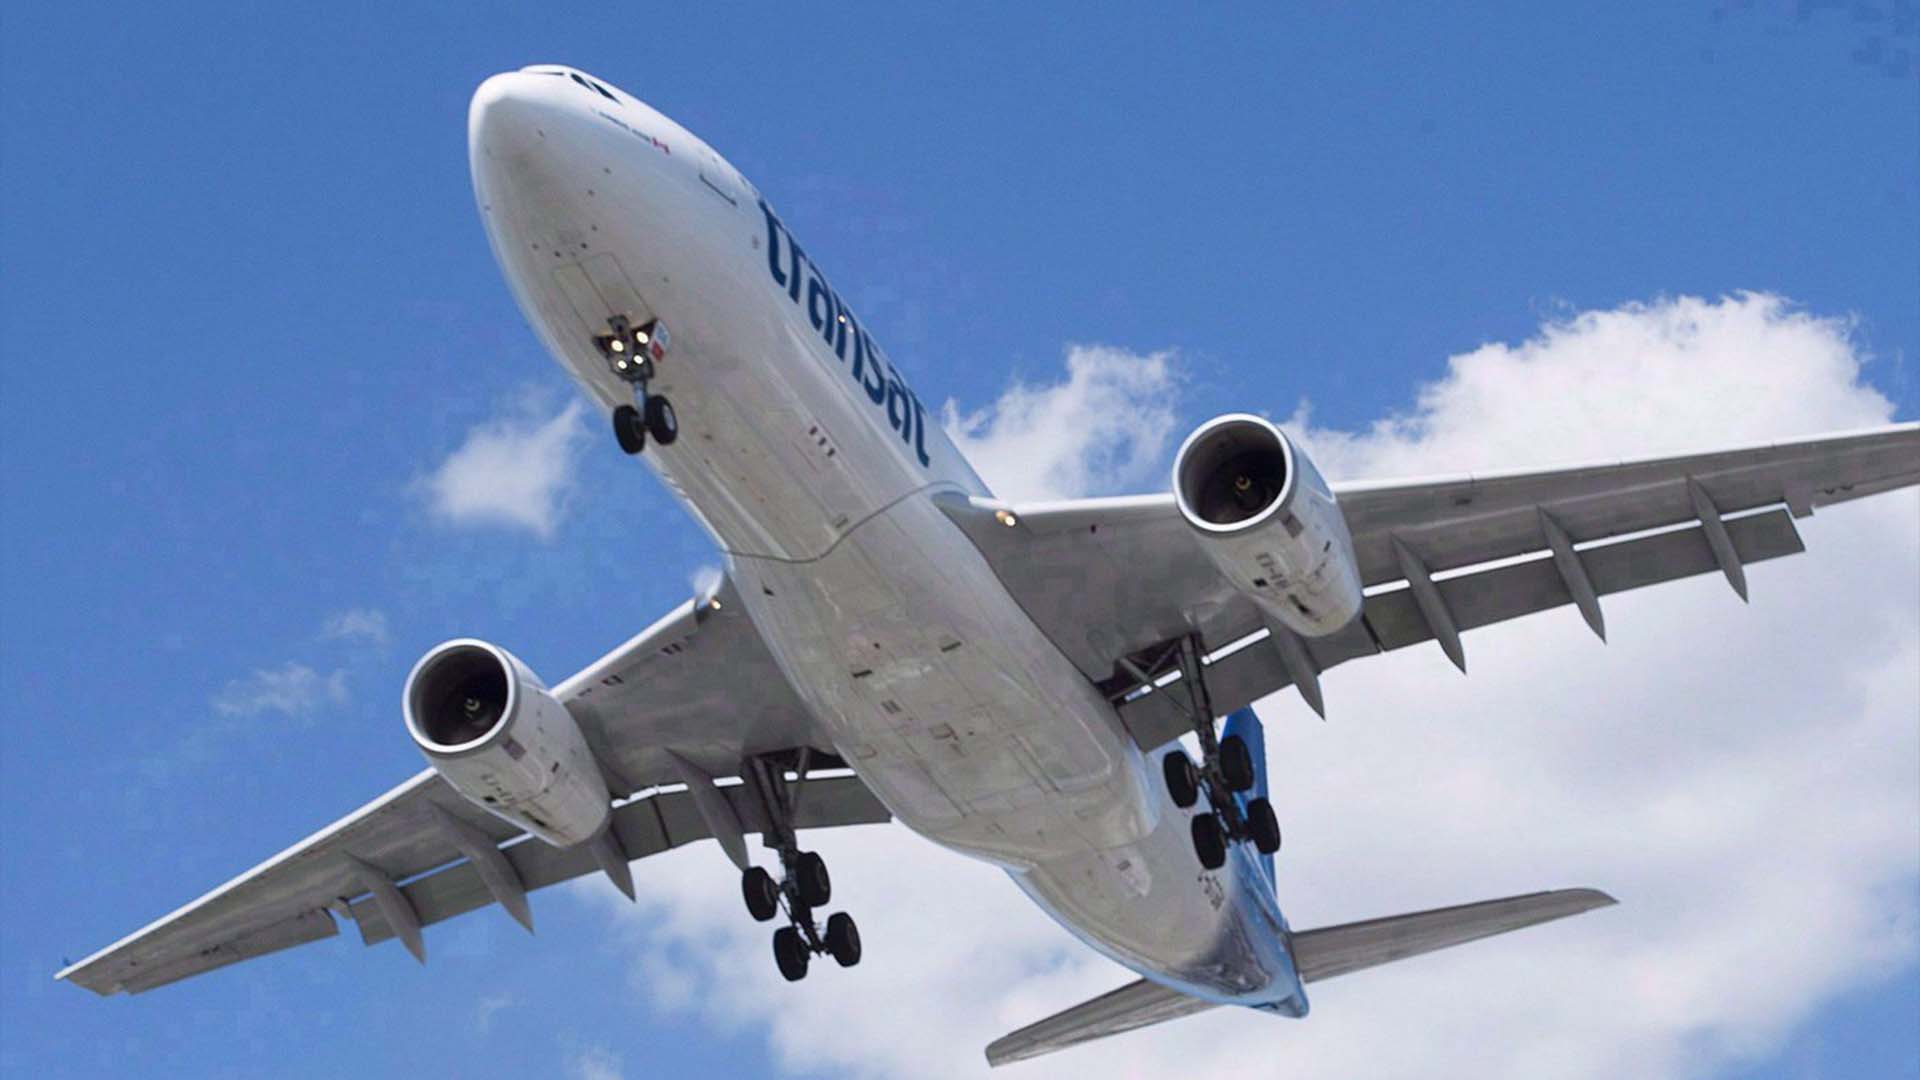 Air Transat indique qu'elle relance un nombre important de ses liaisons pour la saison estivale chargée, y compris des destinations en Europe et aux États-Unis. Un Airbus A330 d'Air Transat atterrit à l'aéroport Trudeau de Montréal, le dimanche 31 juillet 2016